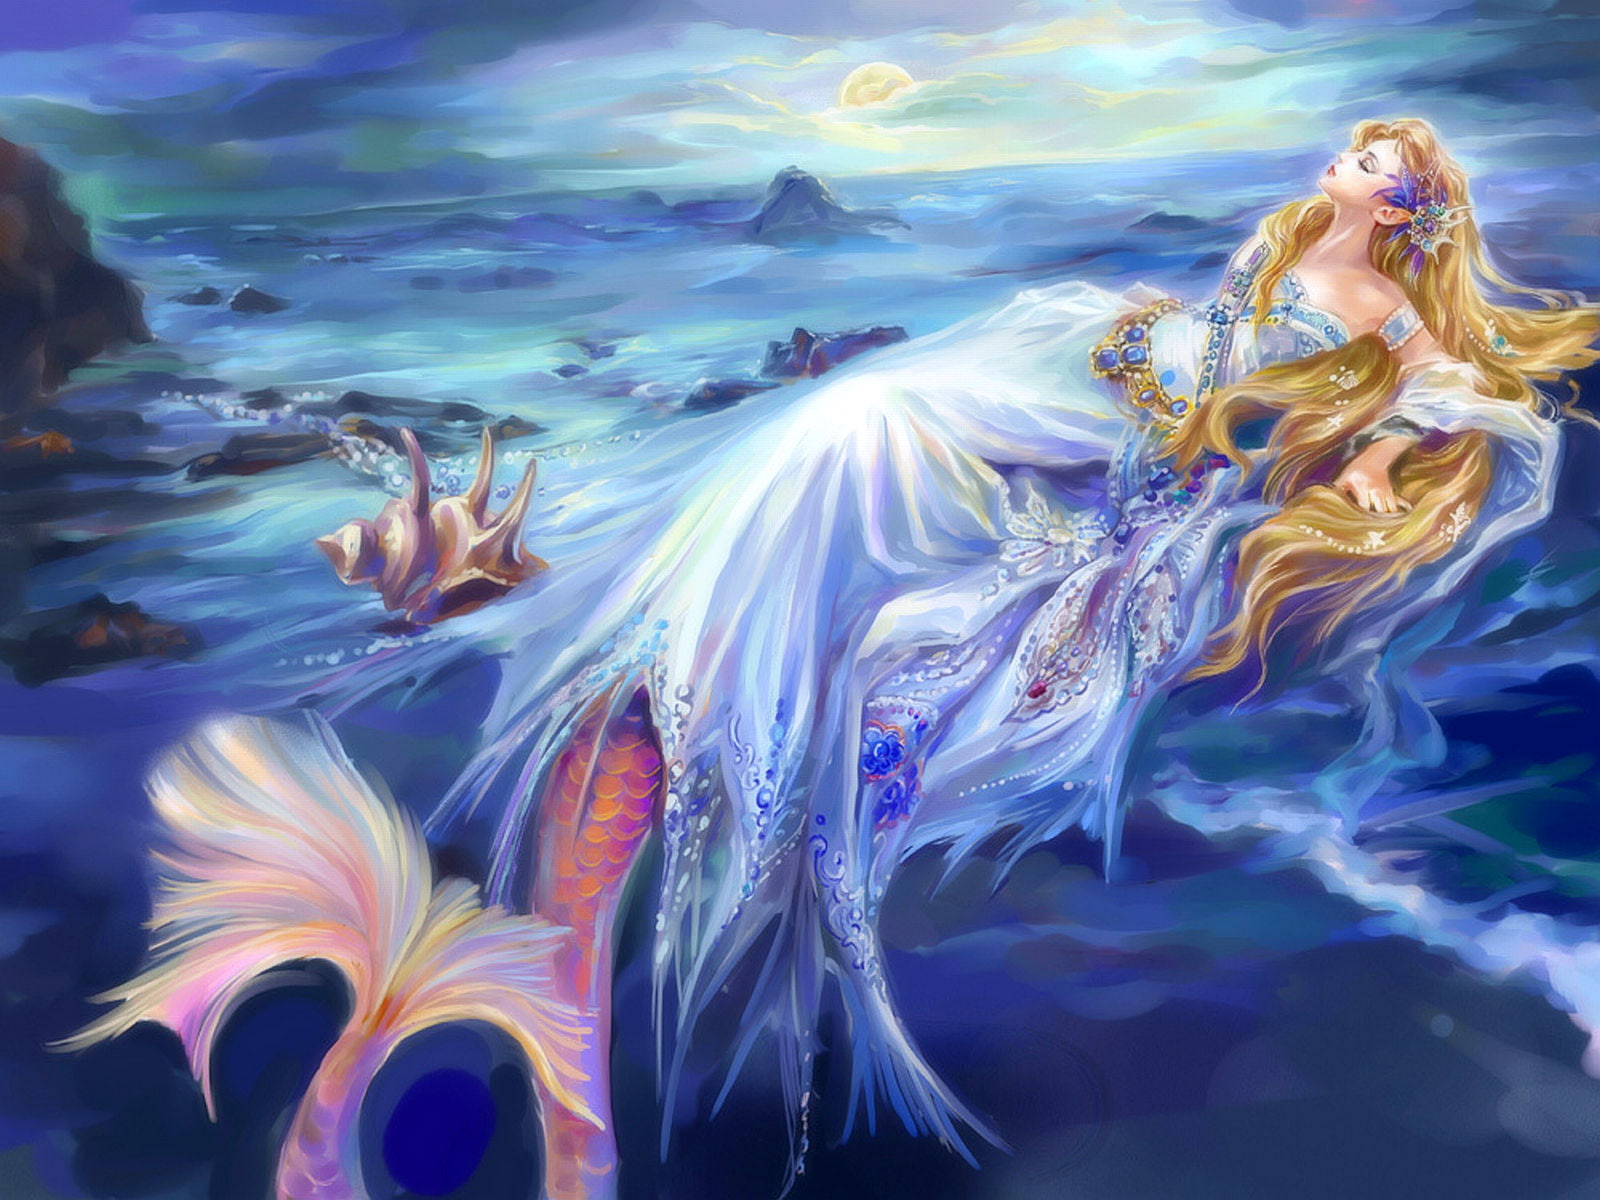 Mermaid HD, mermaid painting, fantasy